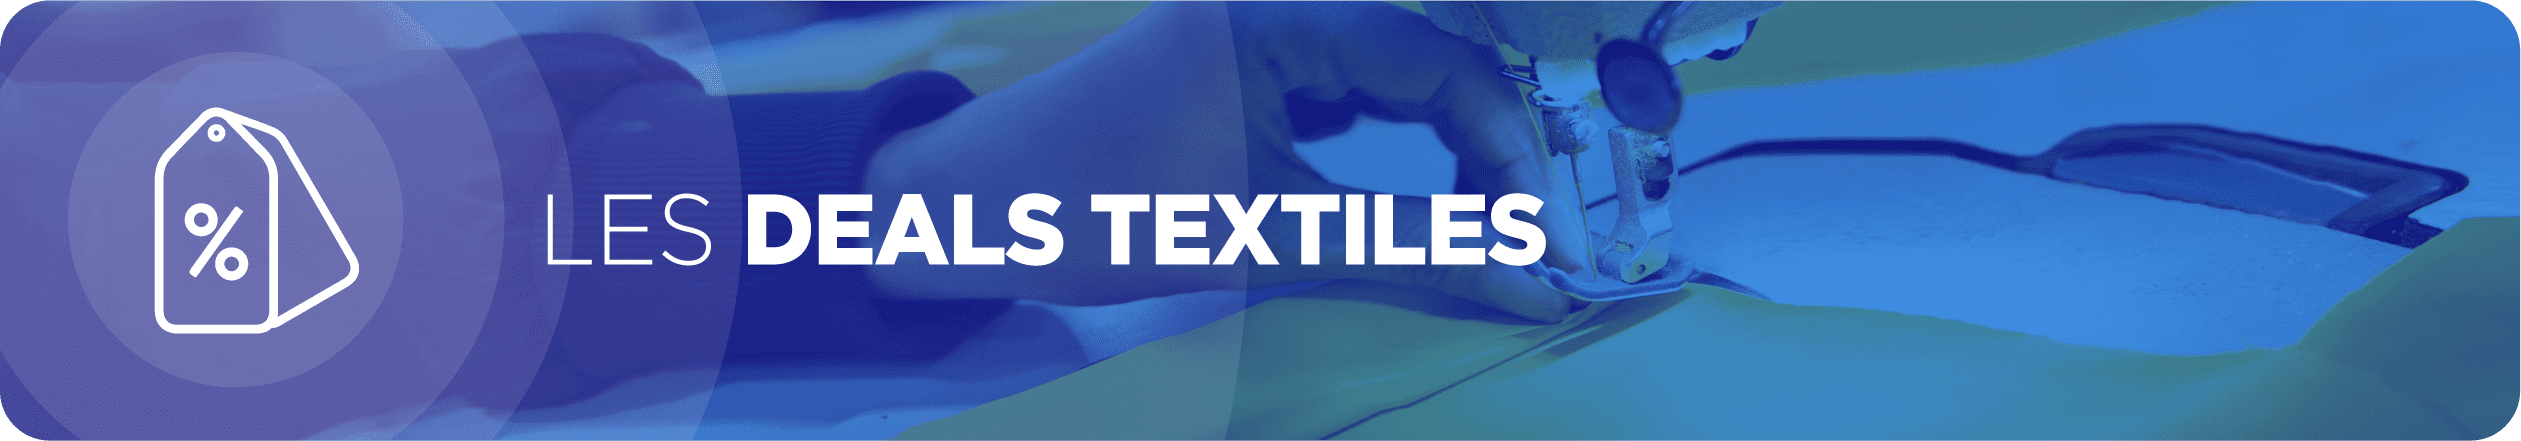 Deals textile